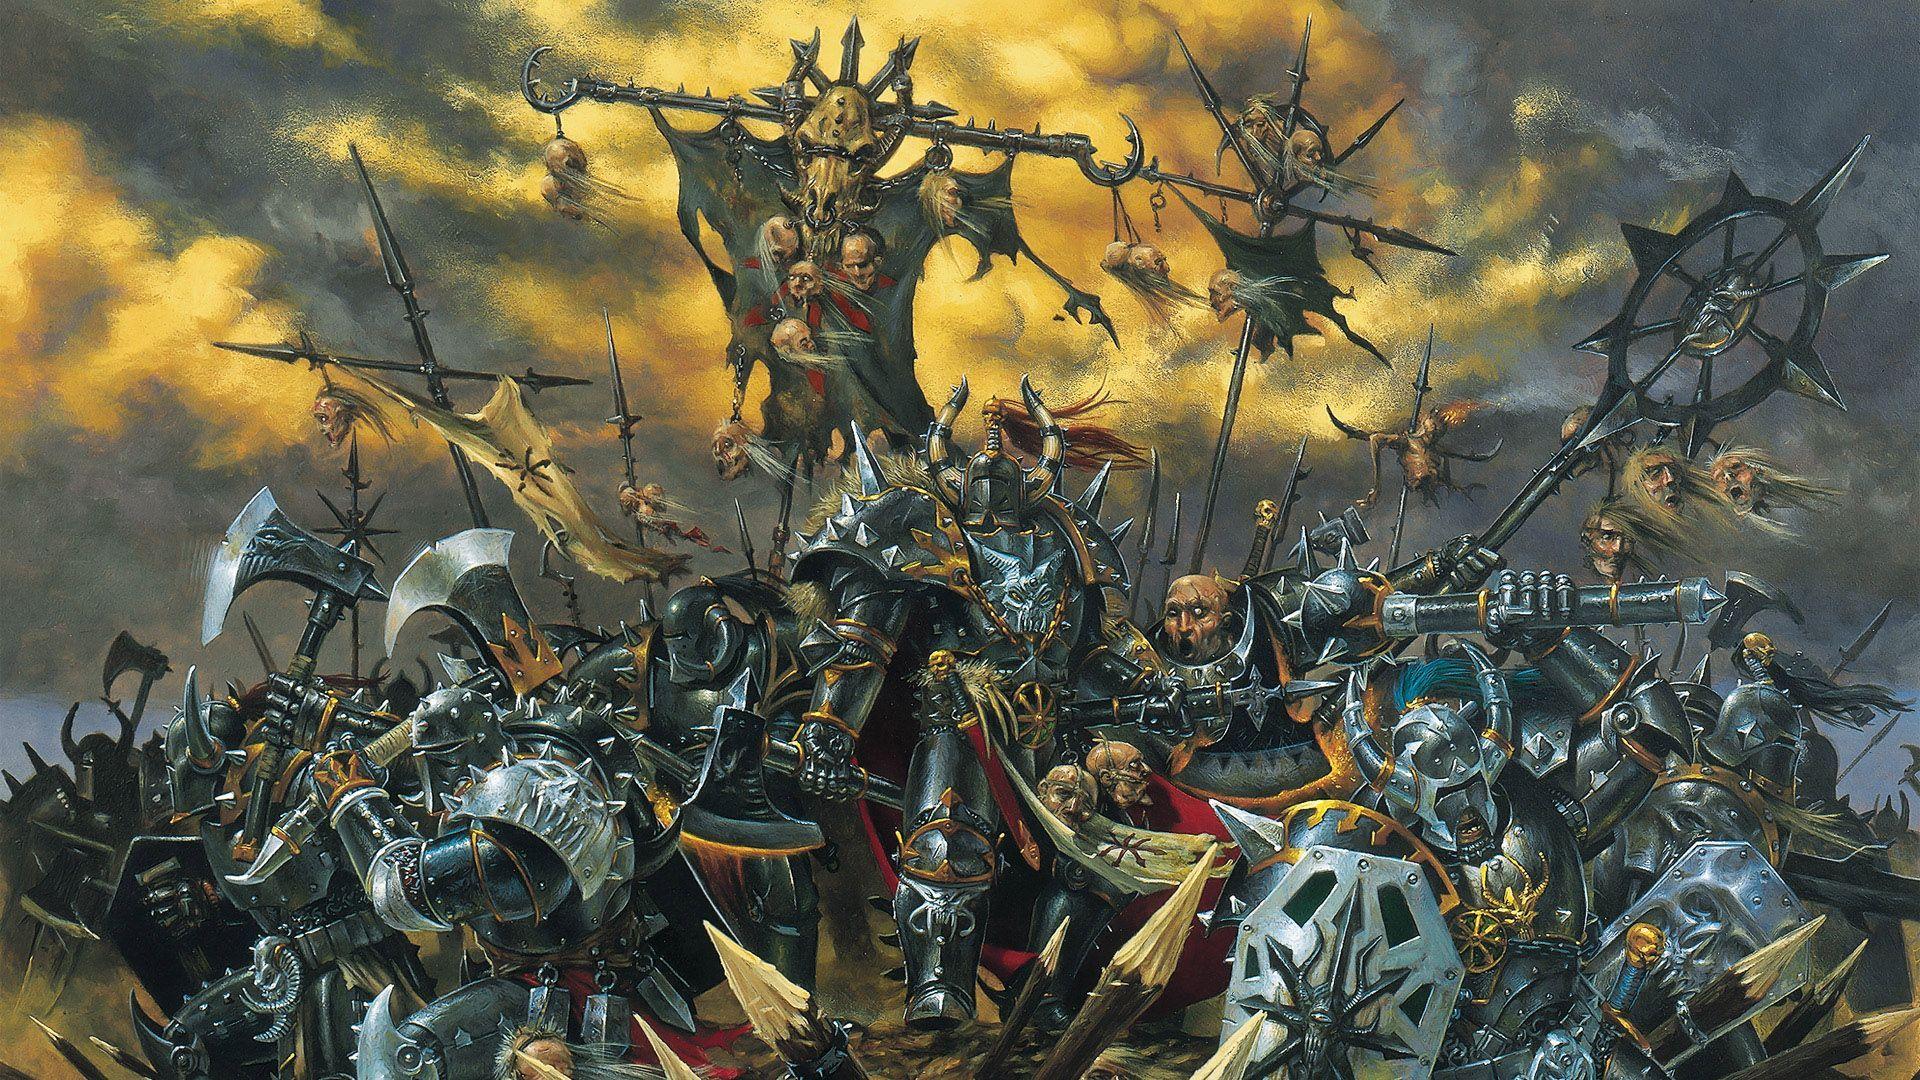 Warhammer Wallpaper. Warhammer art, Warhammer fantasy, Art